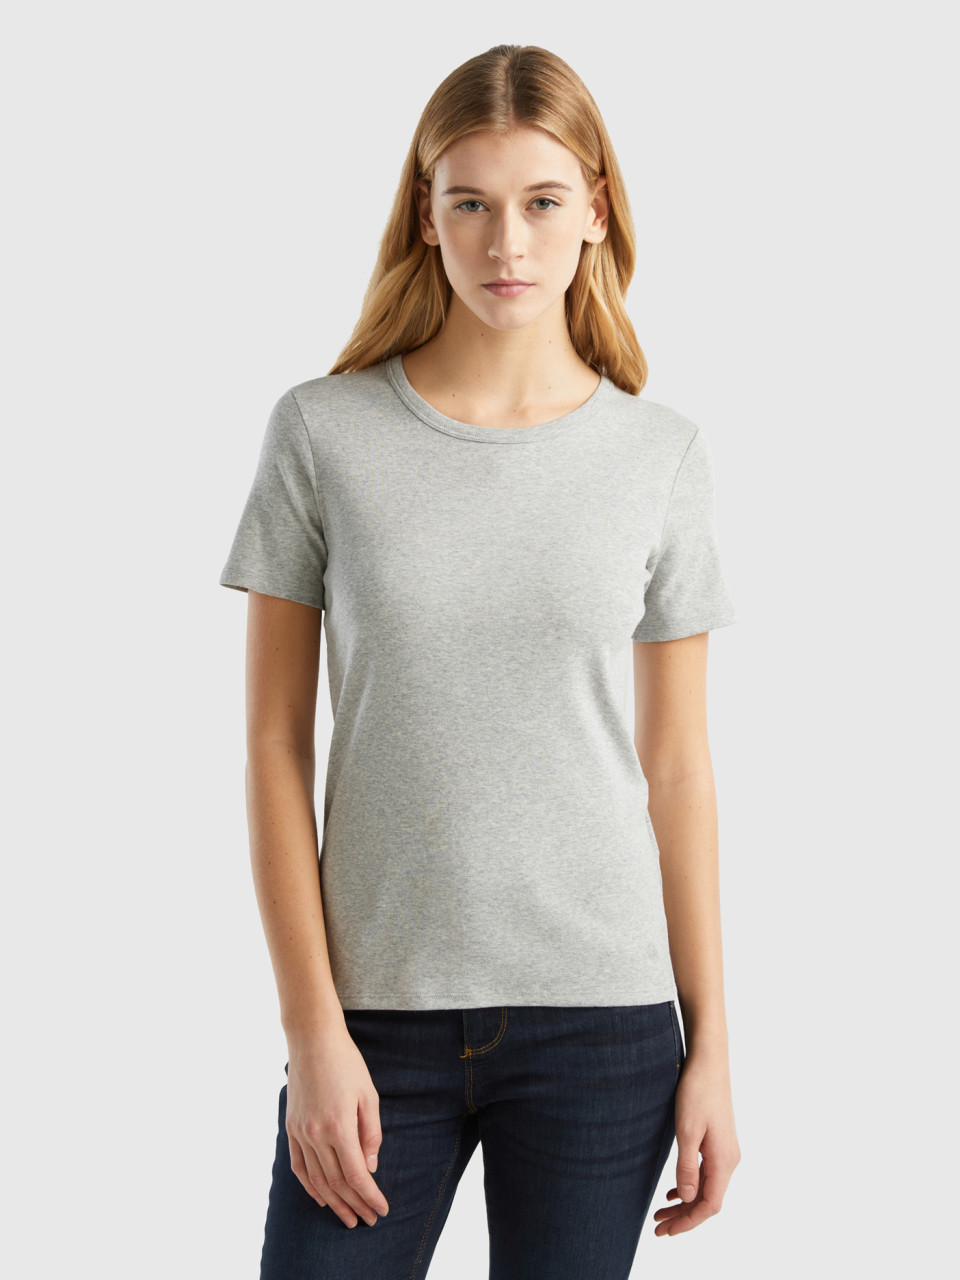 Benetton, Long Fiber Cotton T-shirt, Light Gray, Women